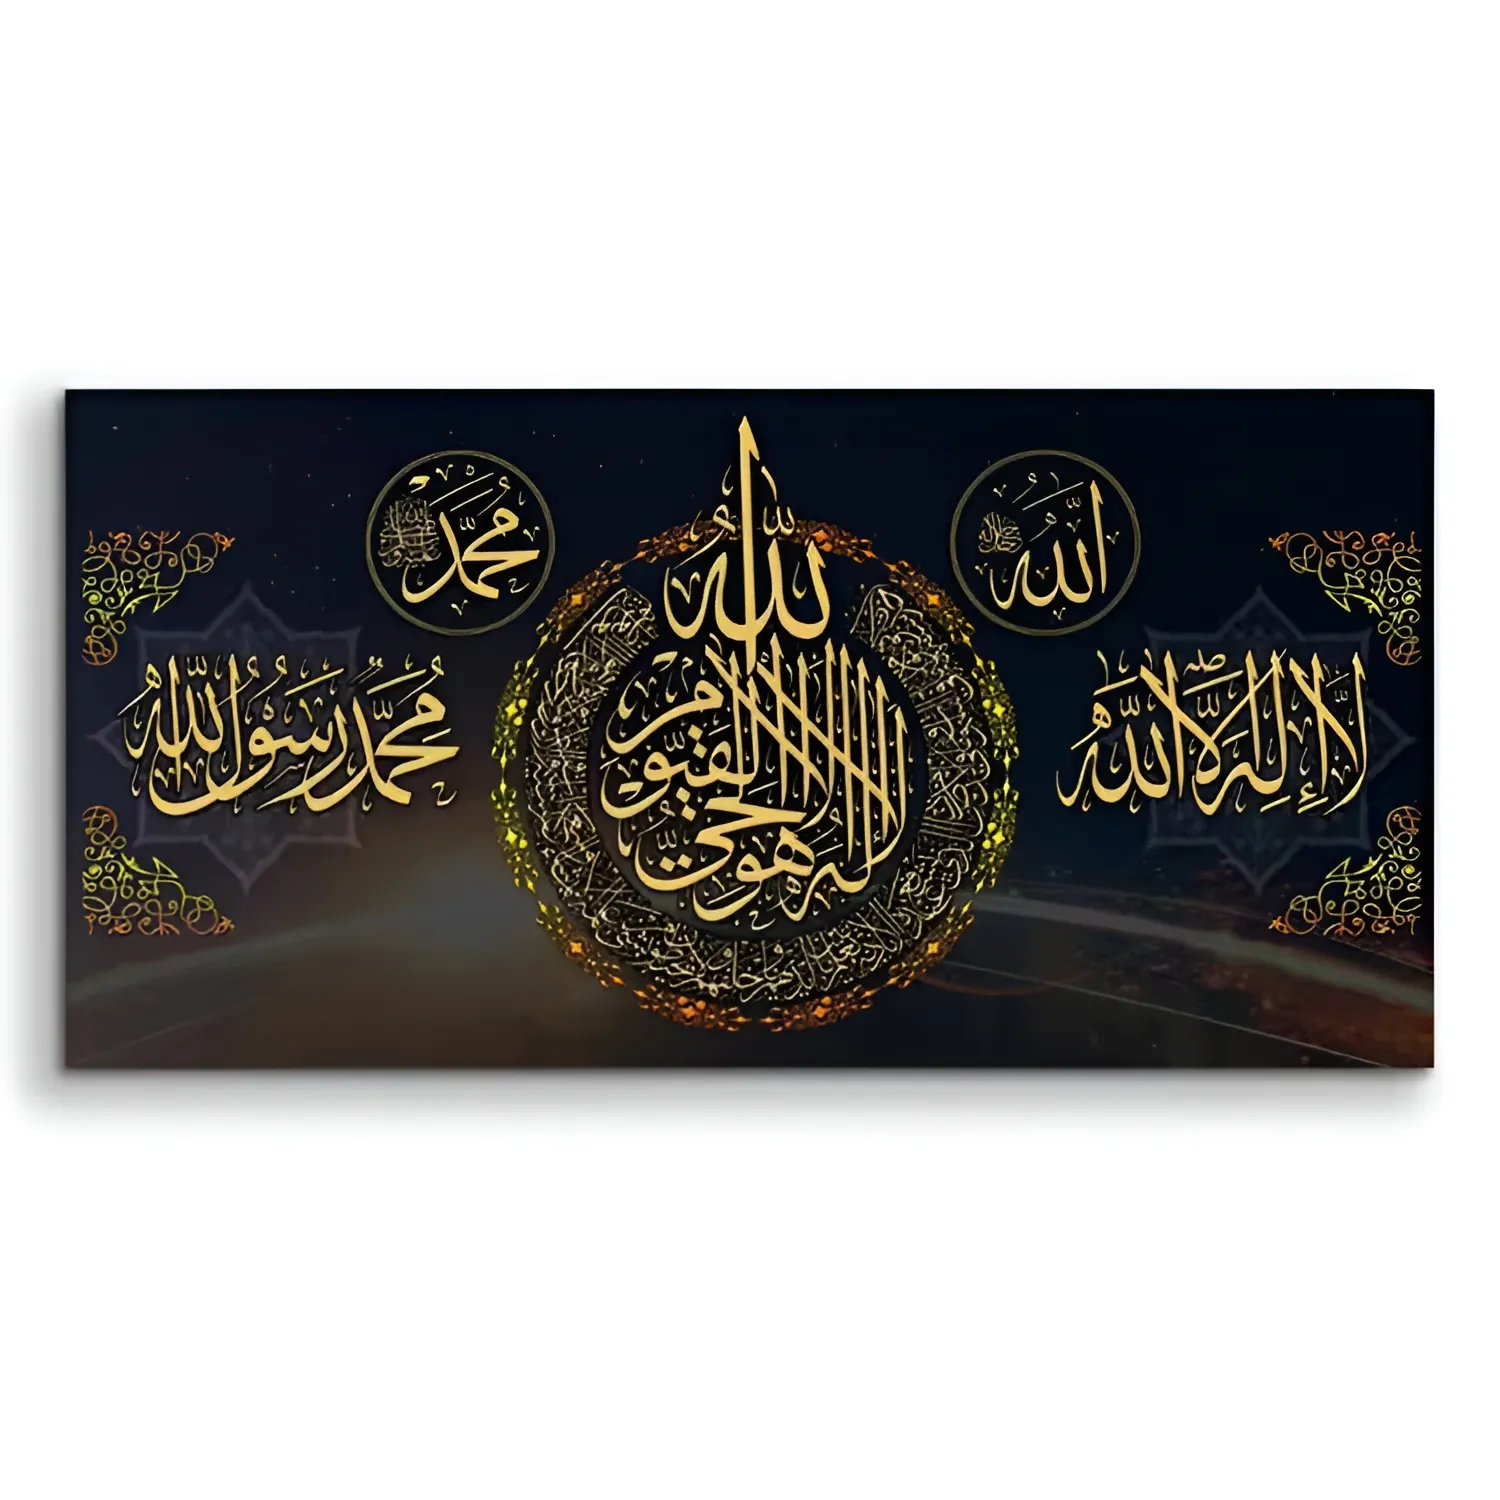 لوحات عربية لصور الحروف المقدمة من القرآن الكريم لوحات قماشية فنية جدارية إسلامية رسومات بالخط الإسلامي صور لتزيين المنزل